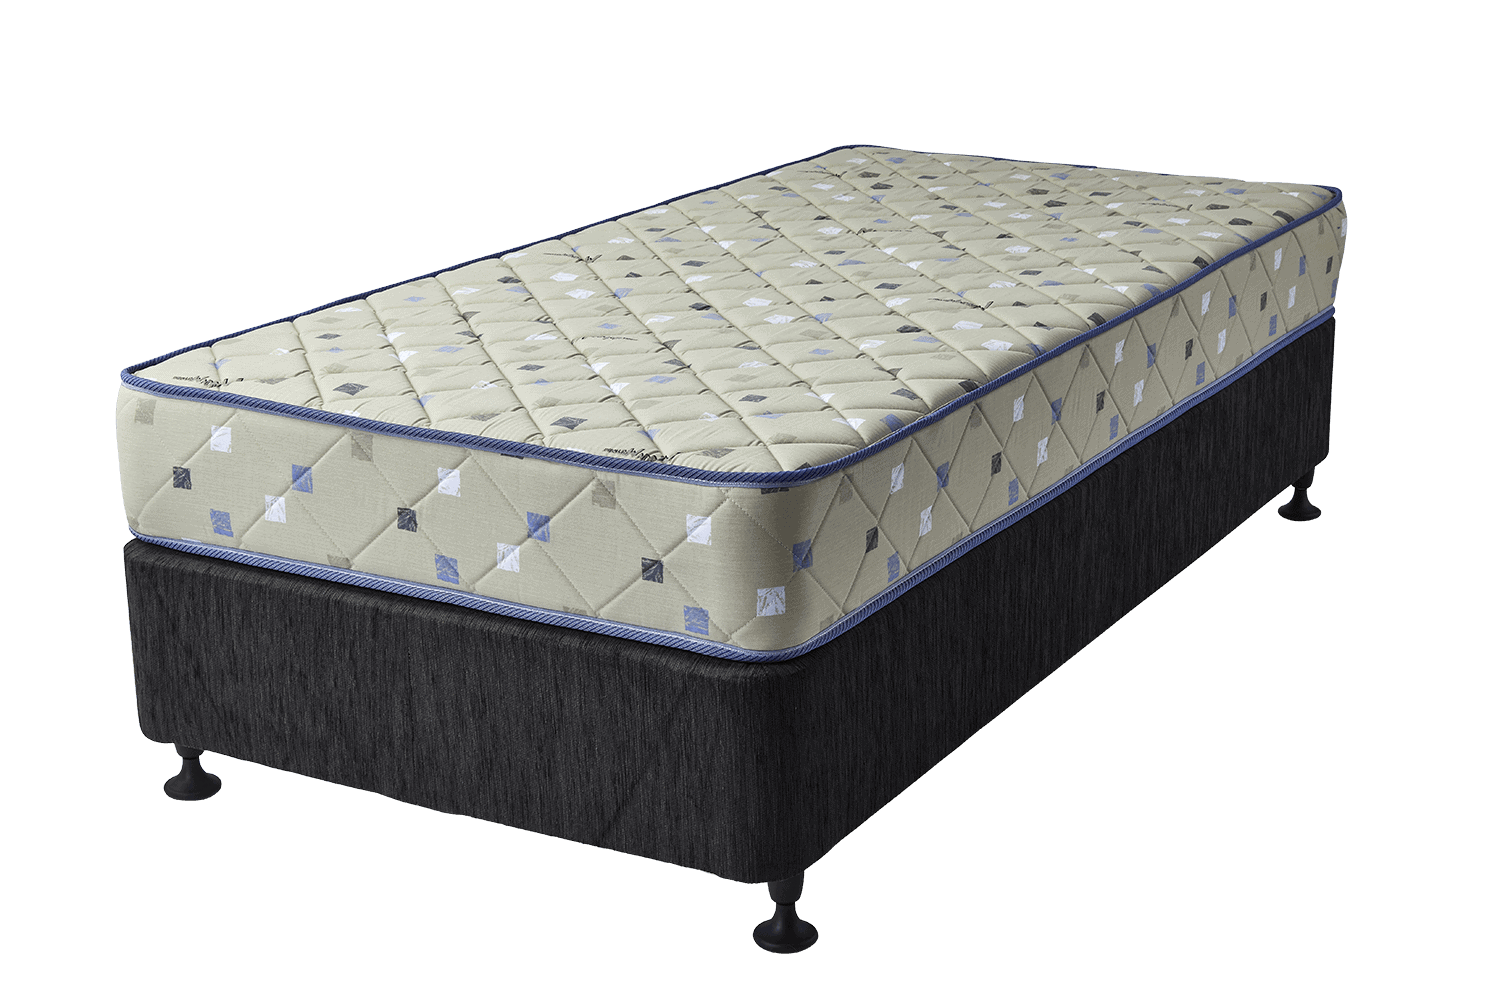 makin mattresses mattress queen single super king double size